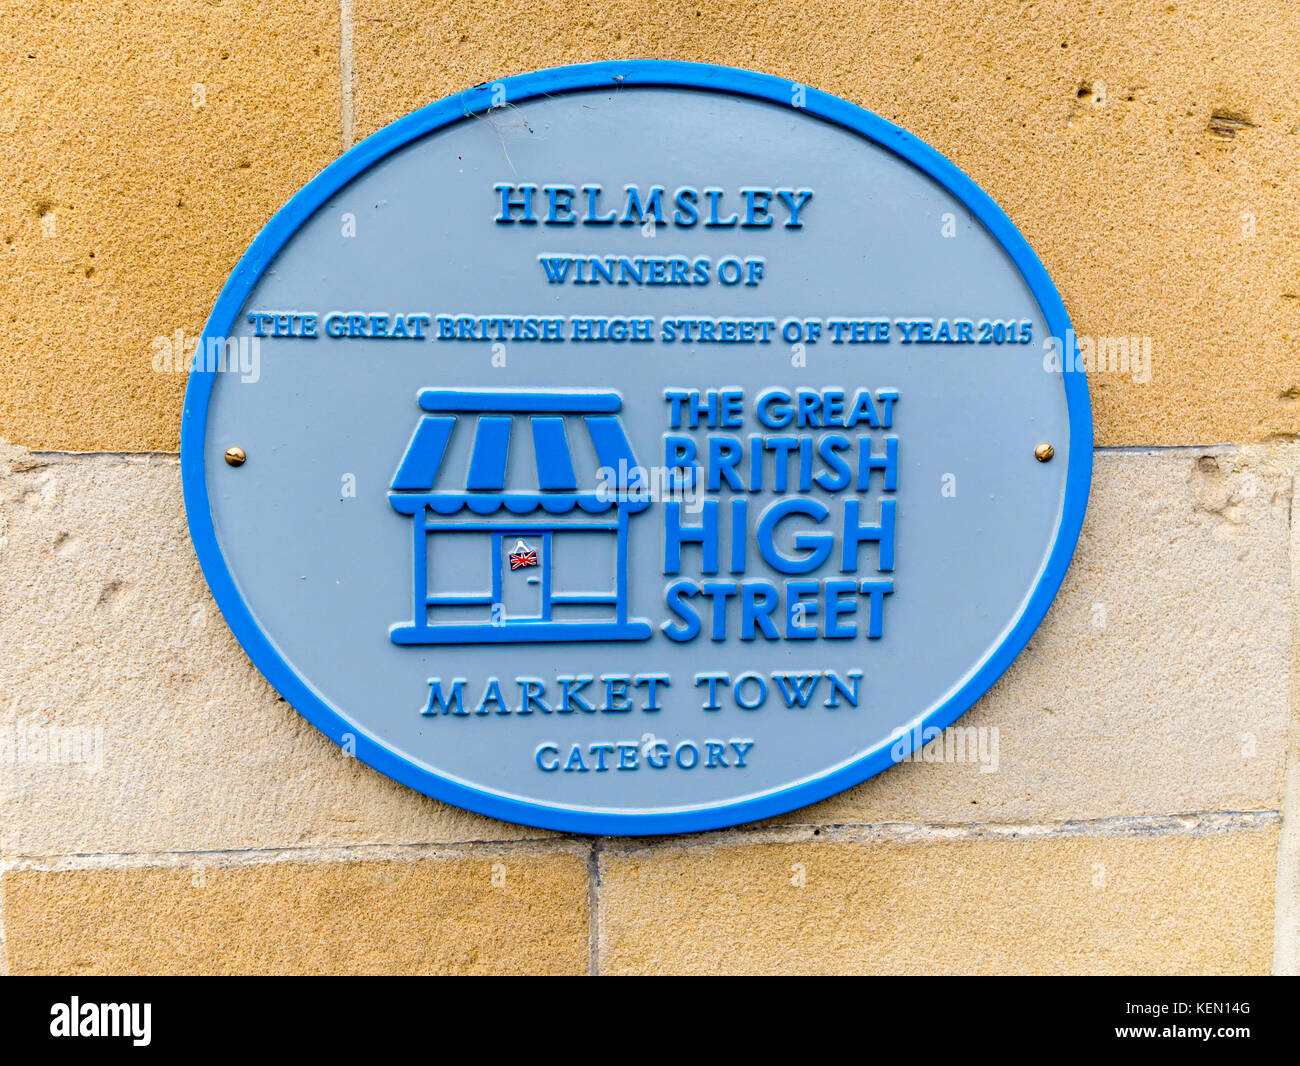 Blaue Plakette für Helmsley Gewinner des Großen Britischen High Street des Jahres Marktstadt 2015 Kategorie Stockfoto